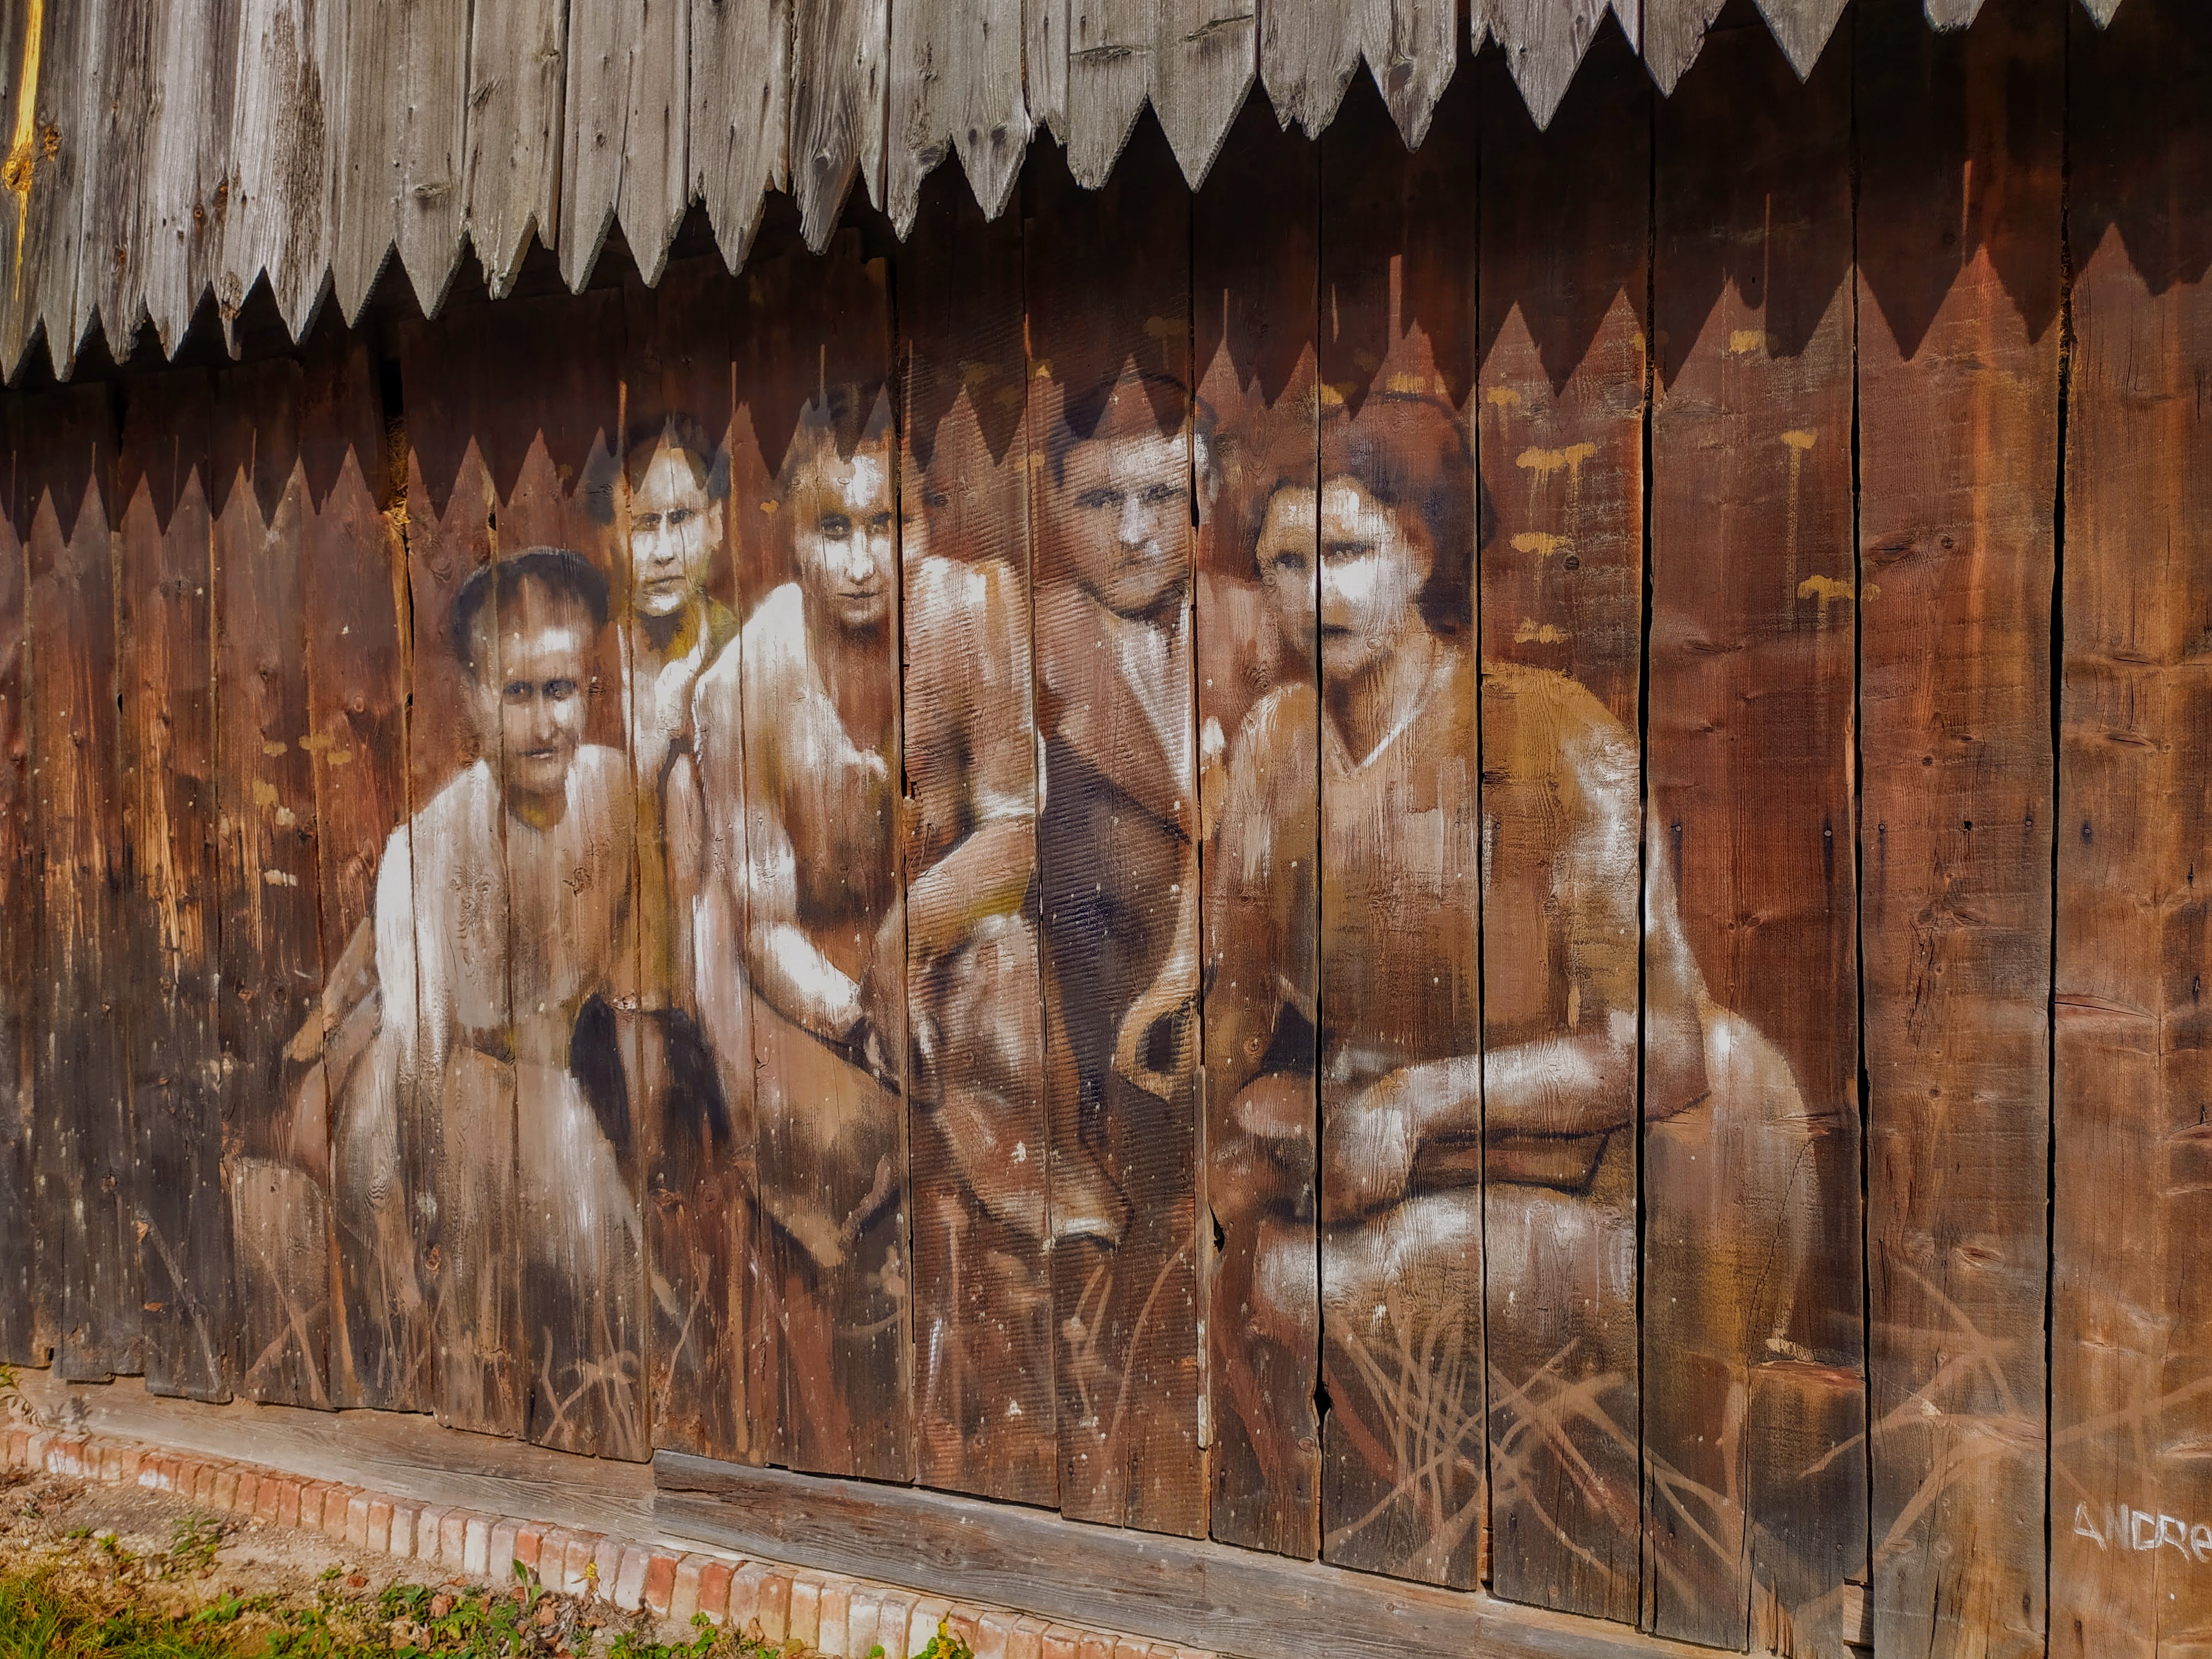 obraz malowany na deskach stodoły, przedstawiający odświętnie ubraną grupę pięciu osób, przykucnietych, pozujących do zdjęcia